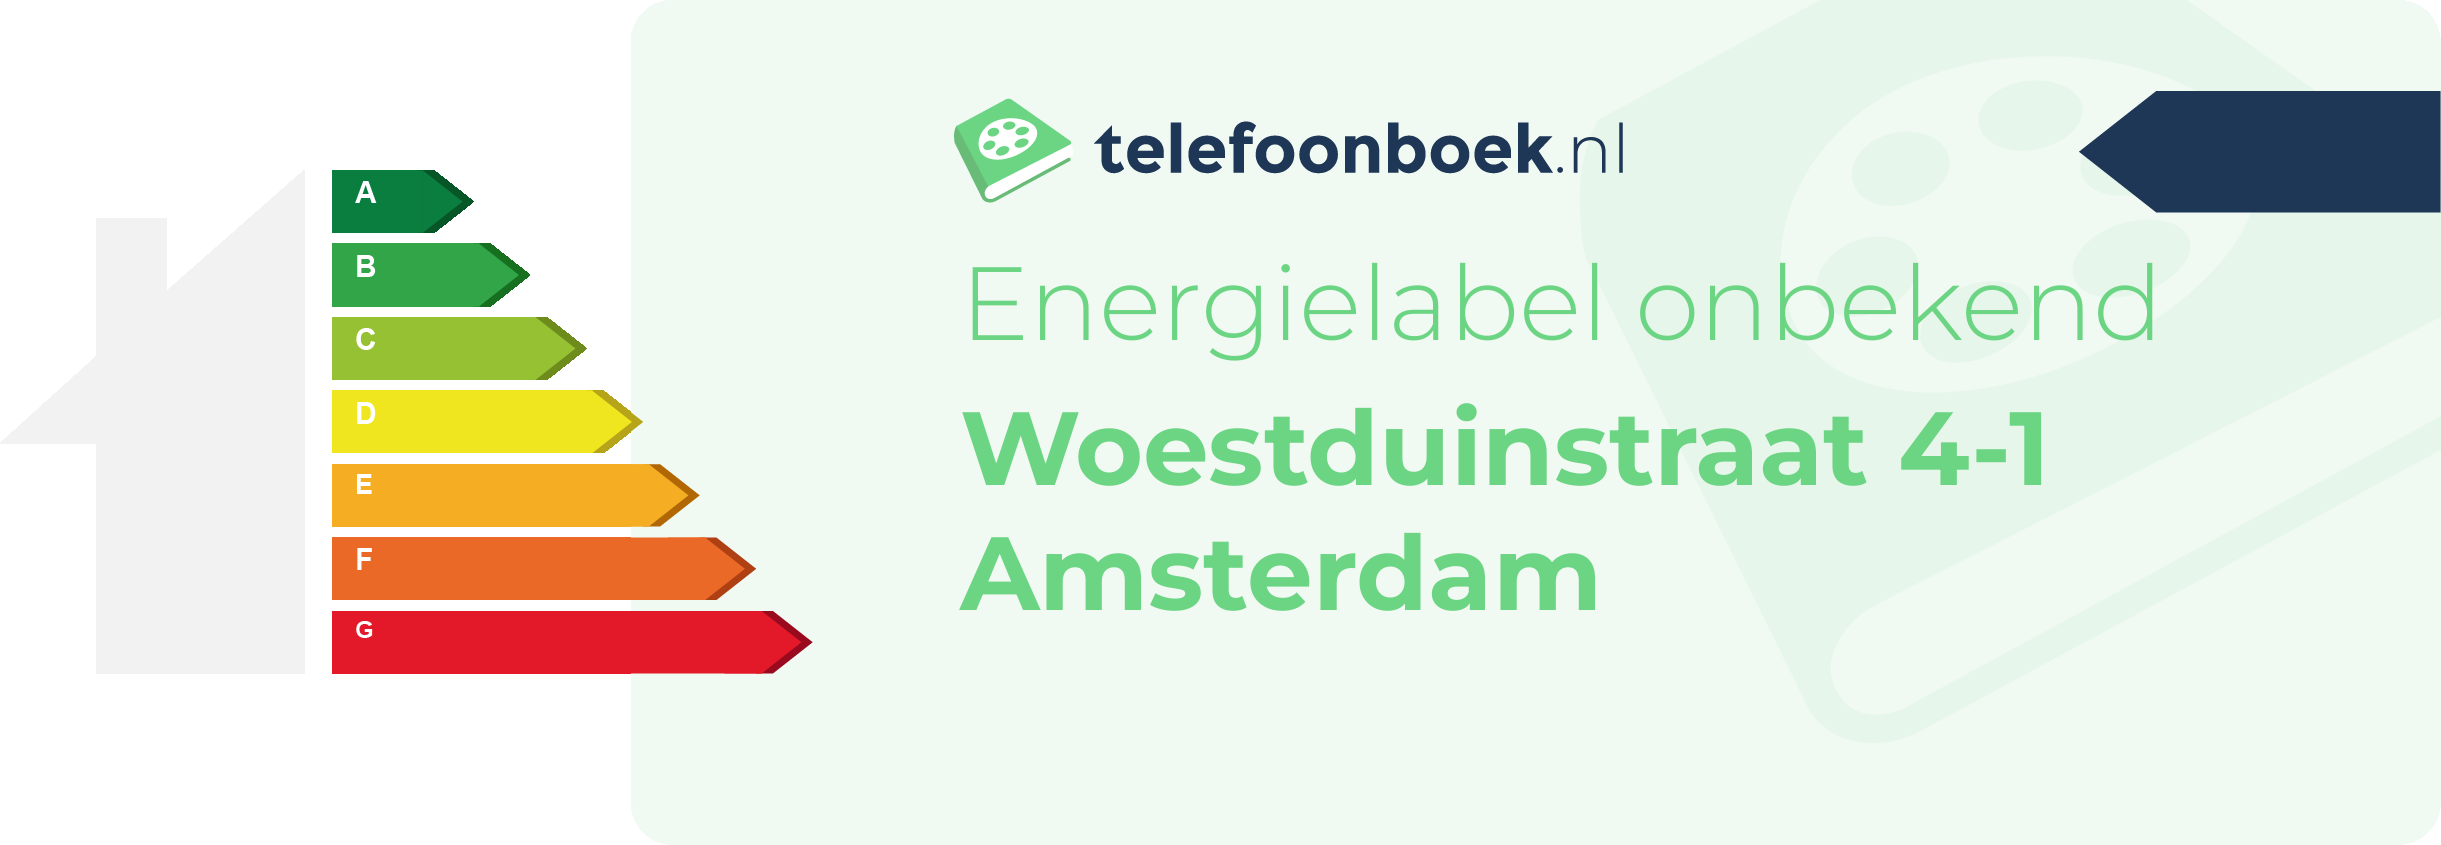 Energielabel Woestduinstraat 4-1 Amsterdam